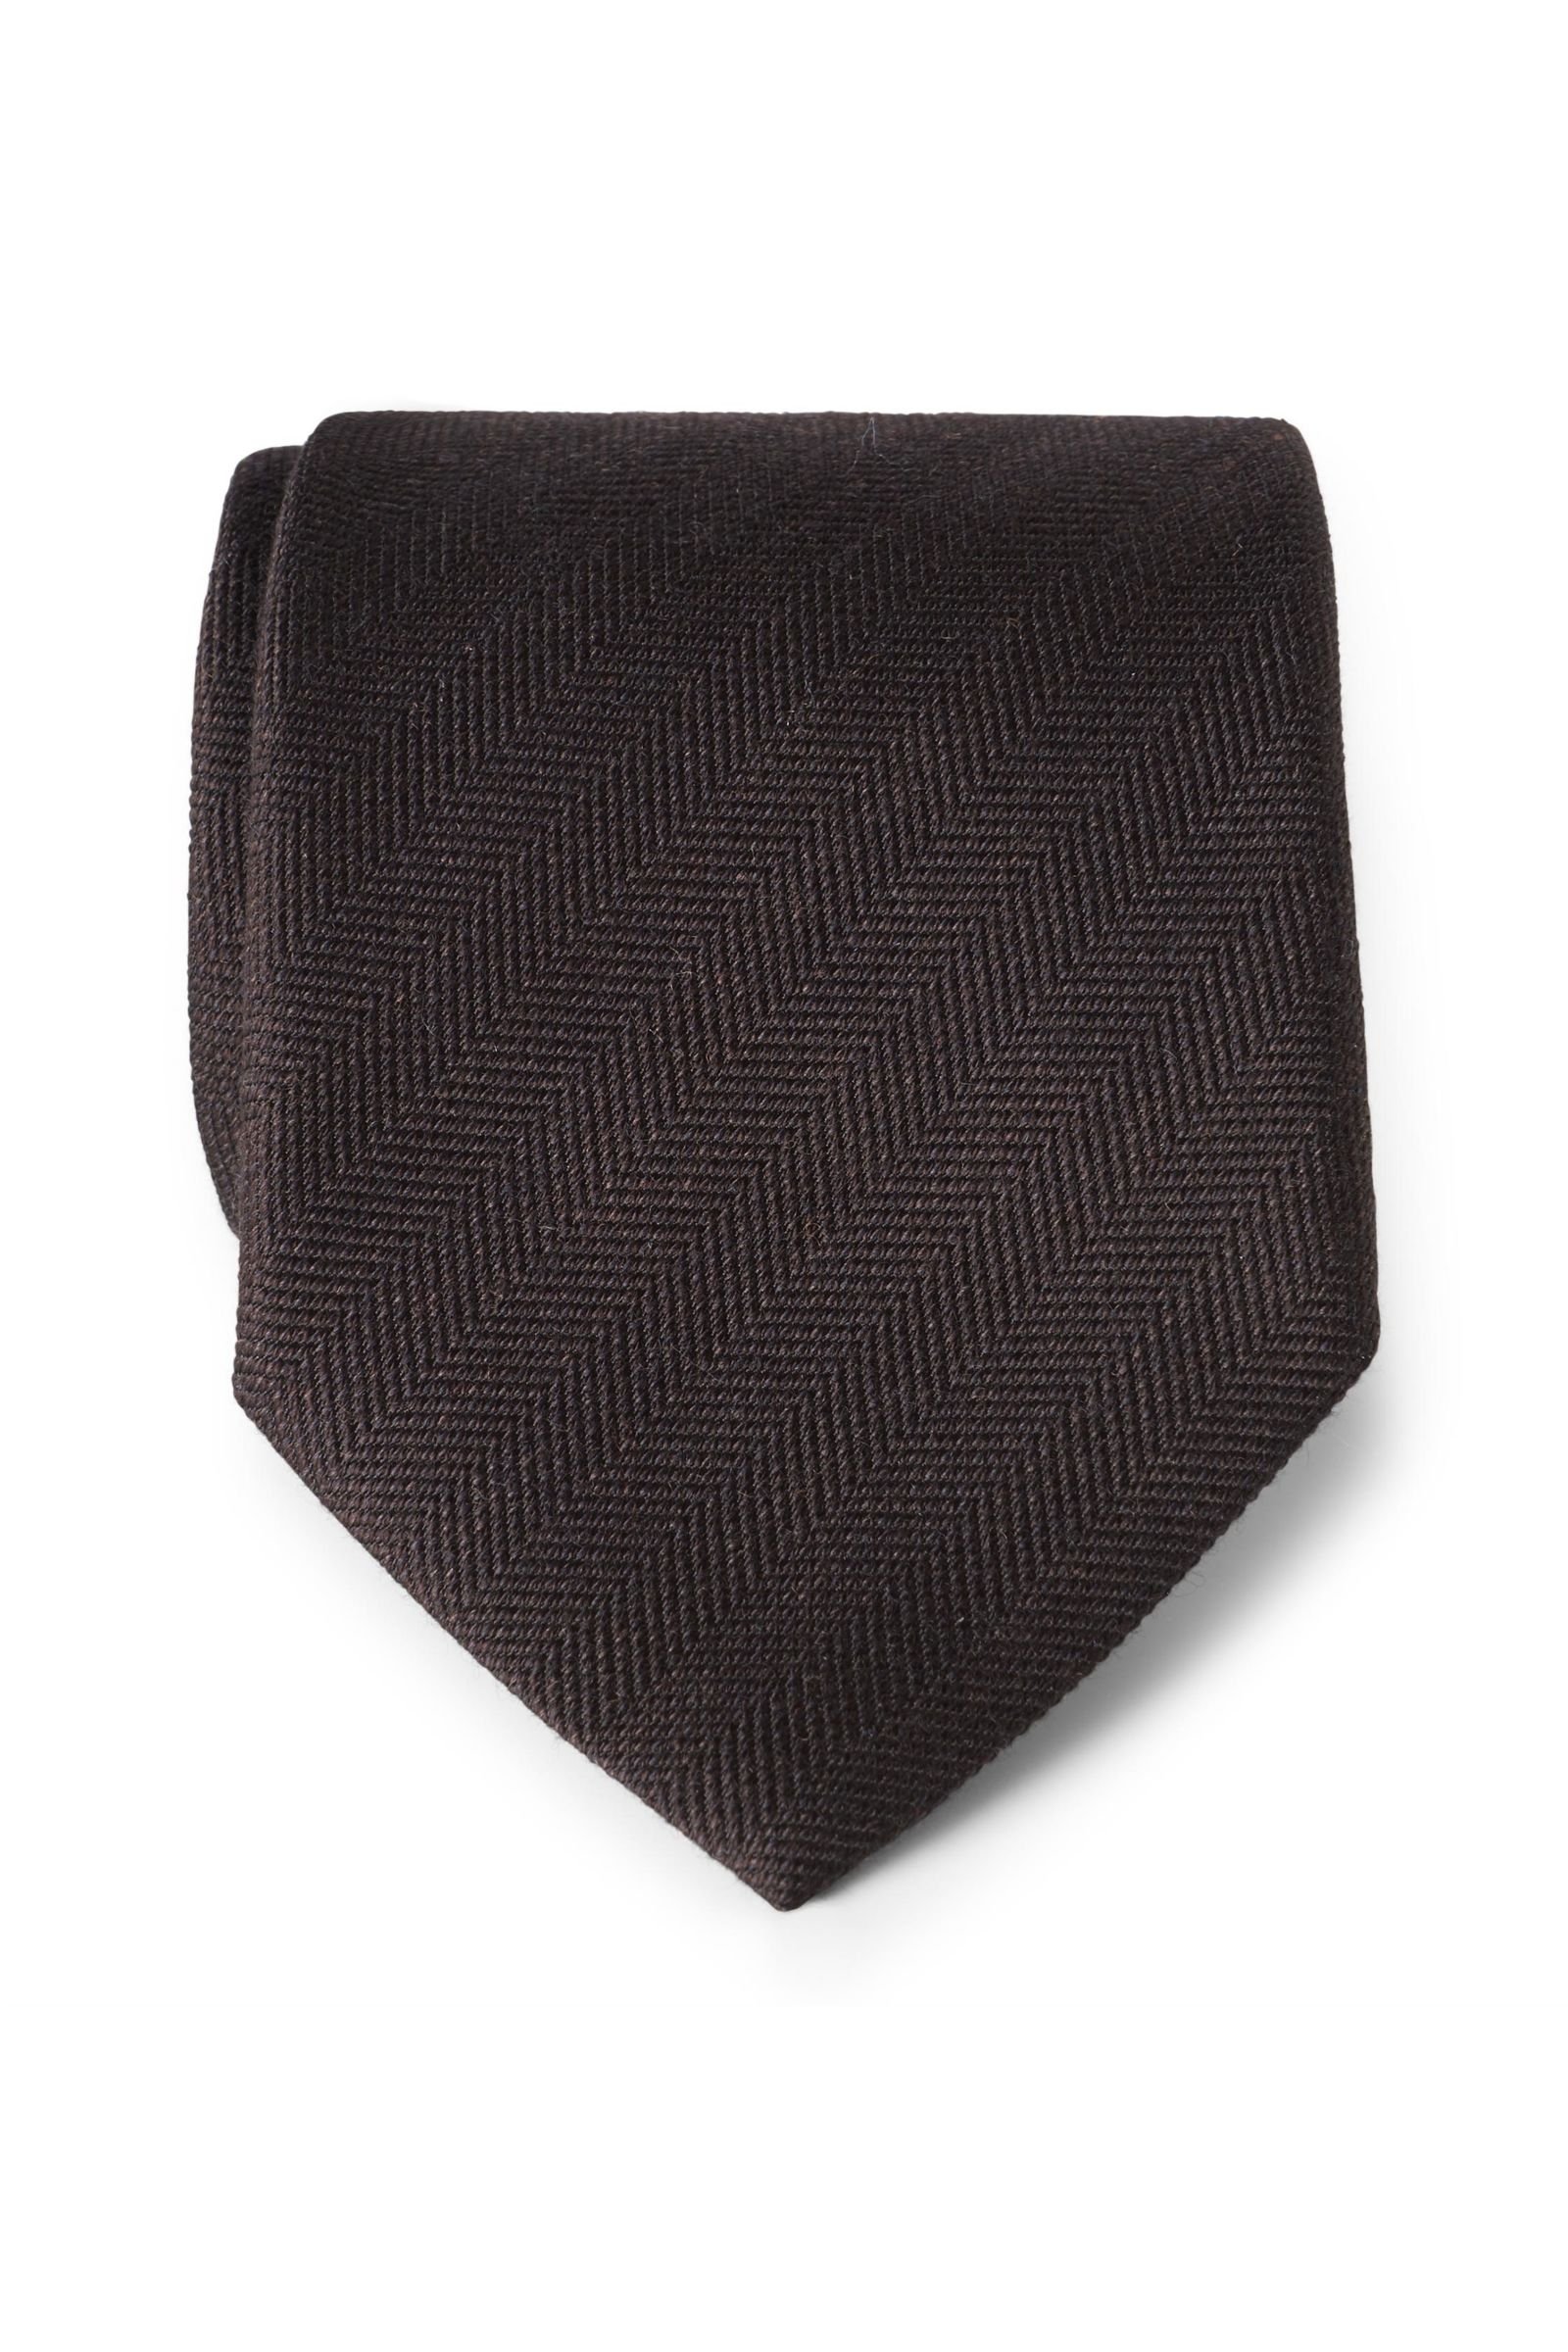 Tie dark brown patterned